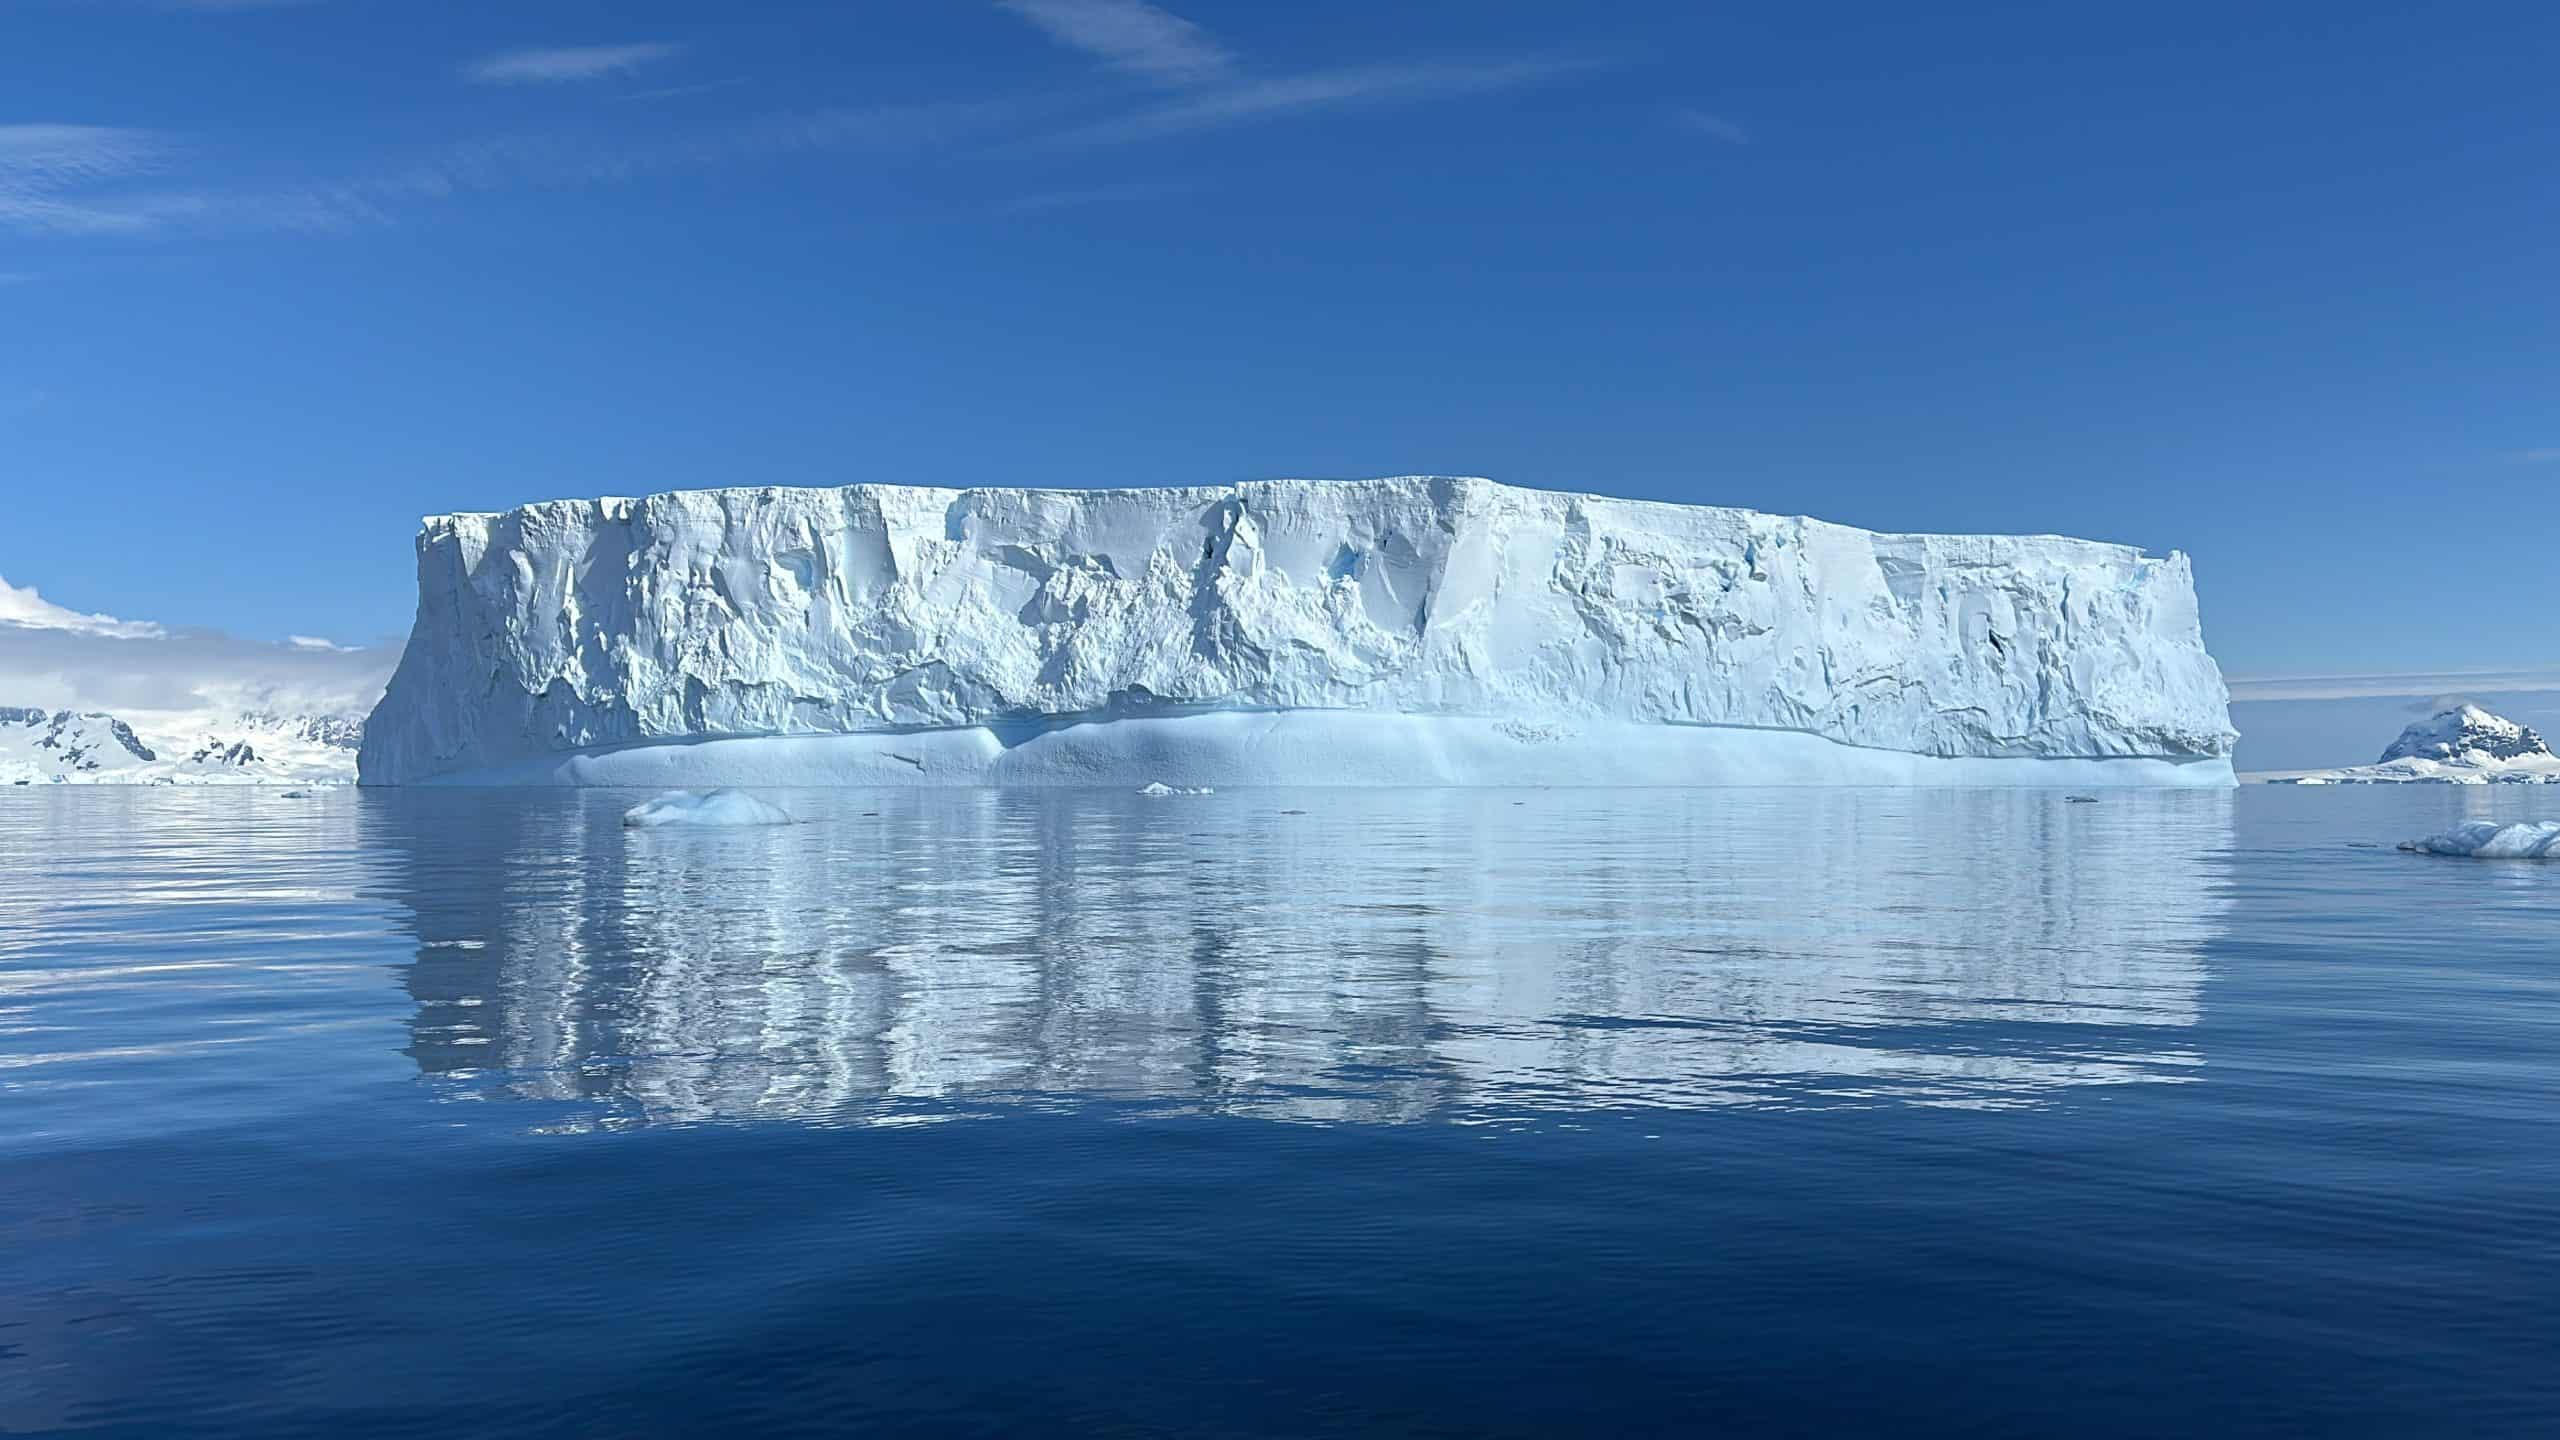 Enormous icebergs